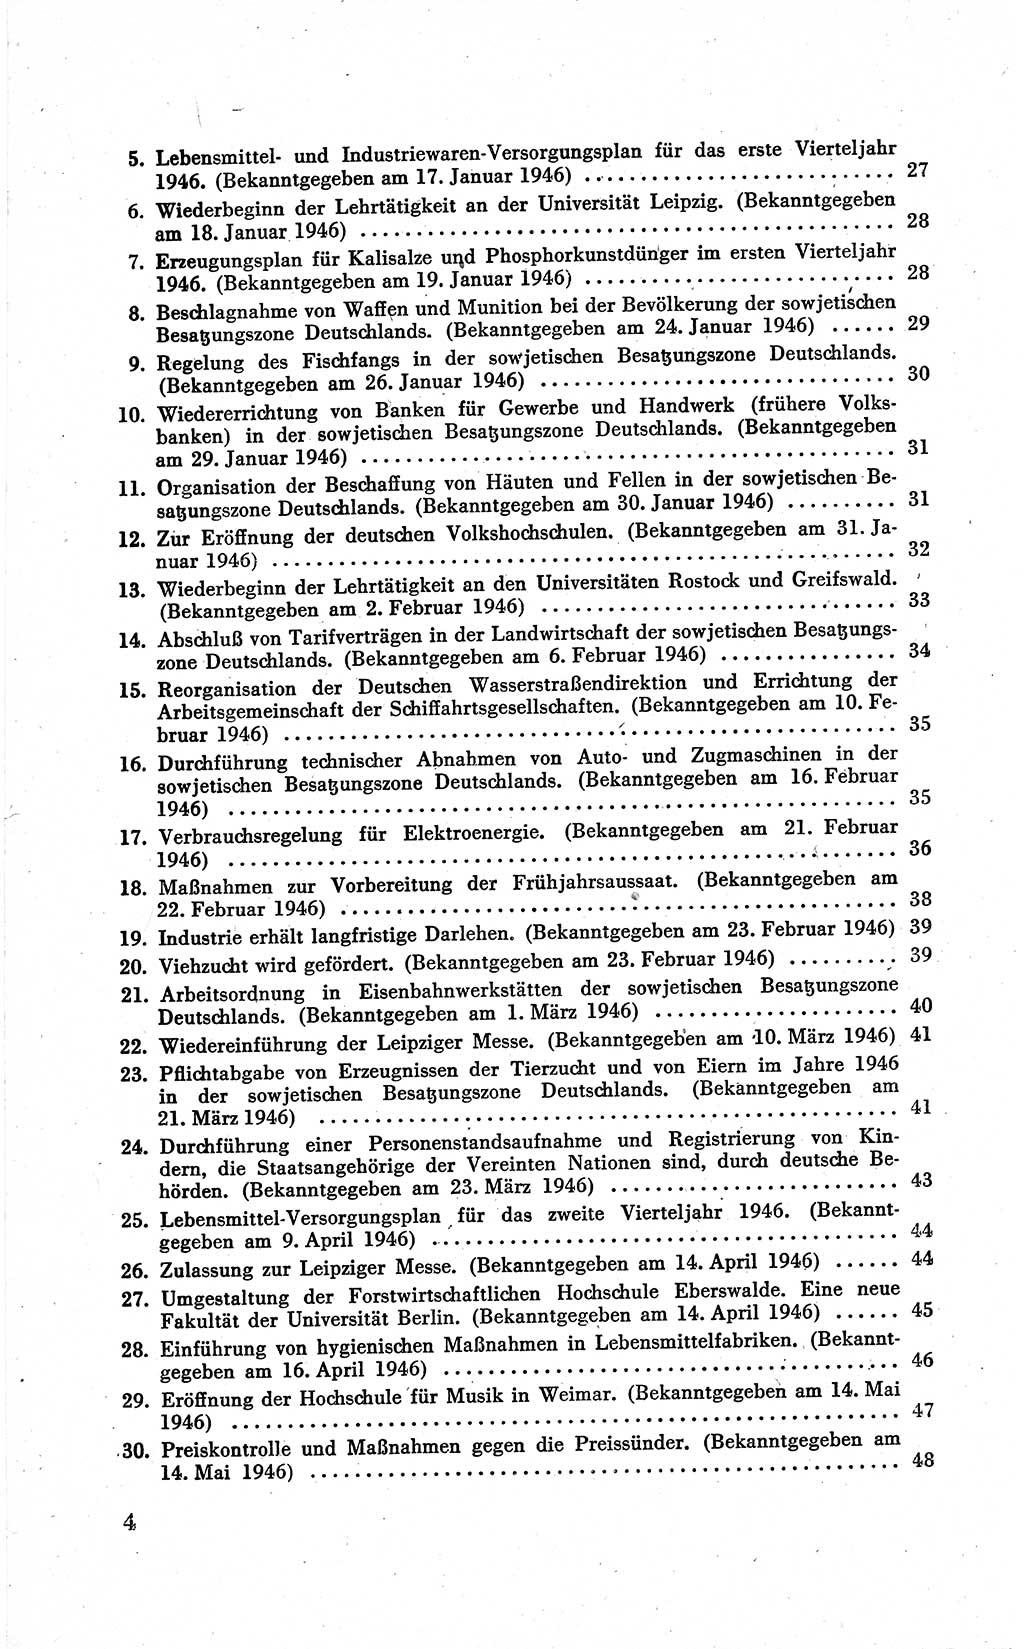 Befehle des Obersten Chefs der Sowjetischen Miltärverwaltung (SMV) in Deutschland - Aus dem Stab der Sowjetischen Militärverwaltung in Deutschland 1946 (Bef. SMV Dtl. 1946, S. 4)